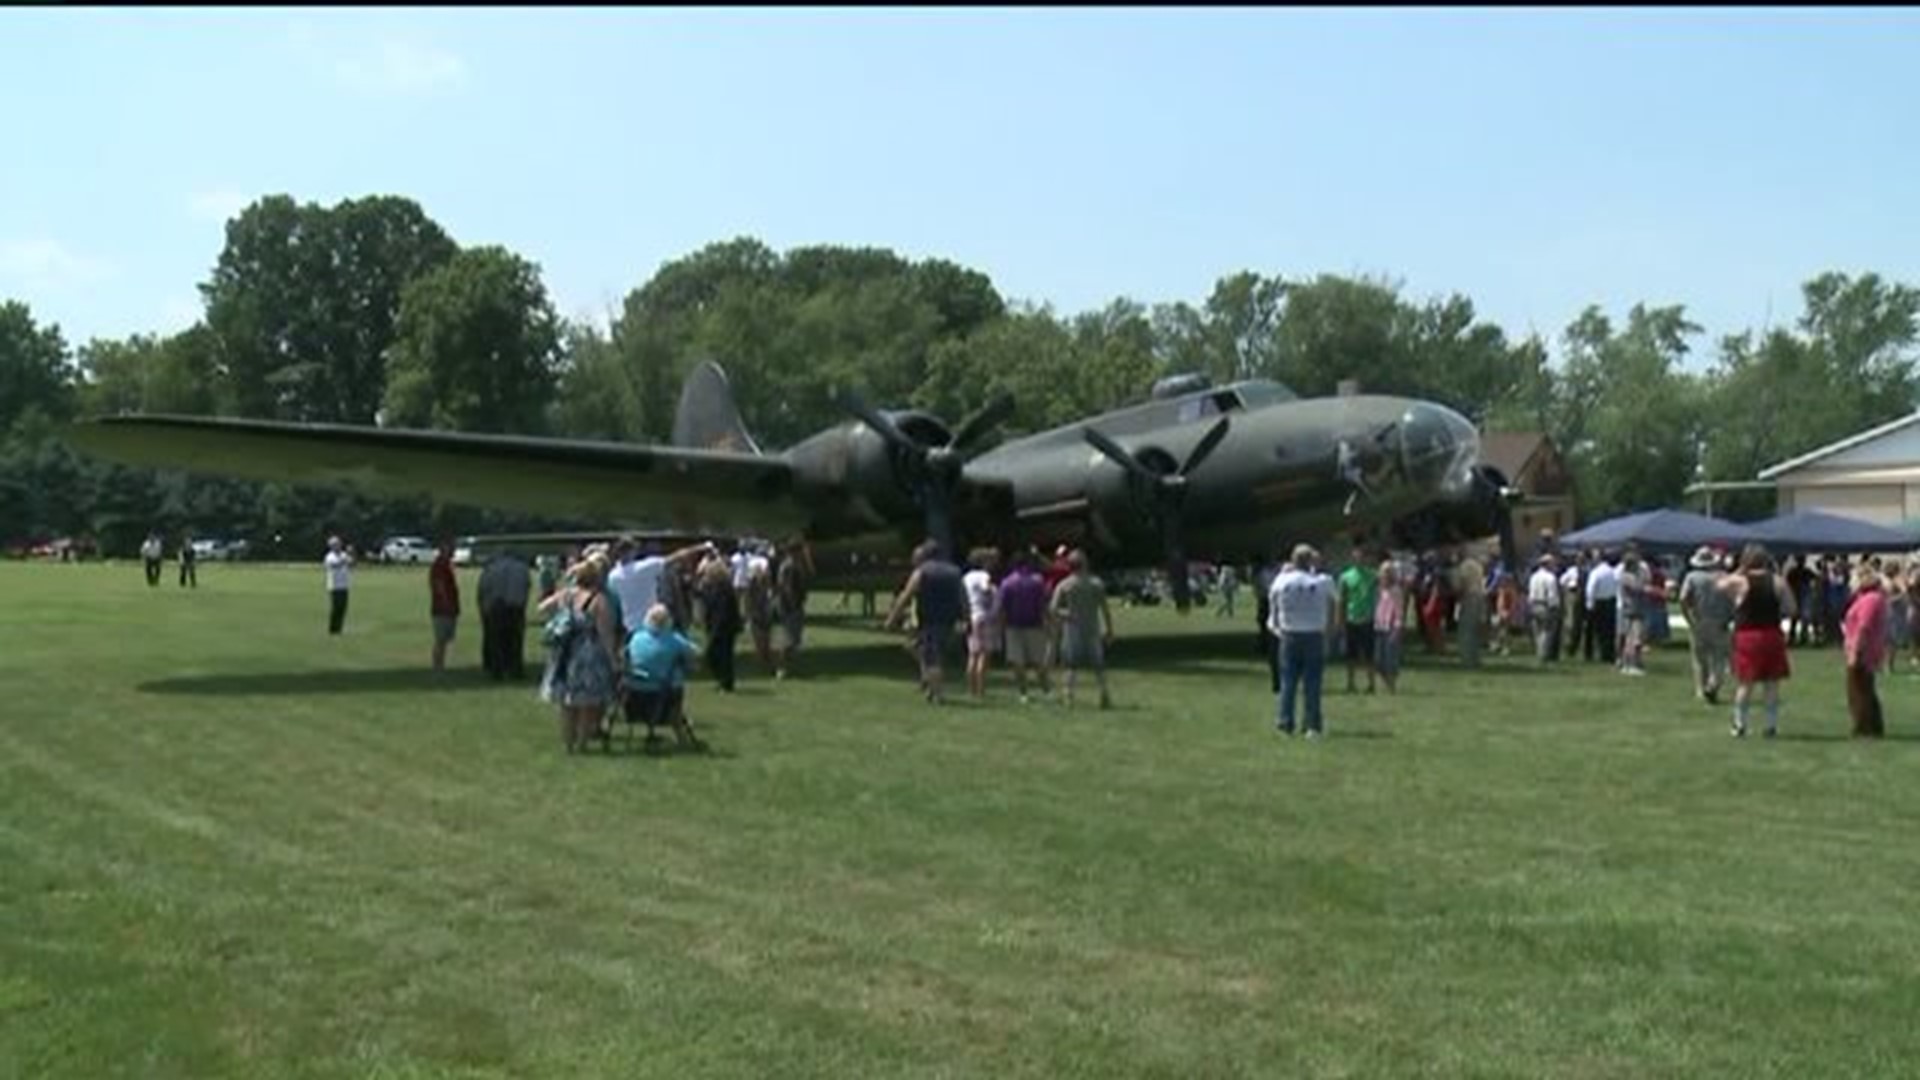 B-17 on Display in Honor of "Dutch" Van Kirk